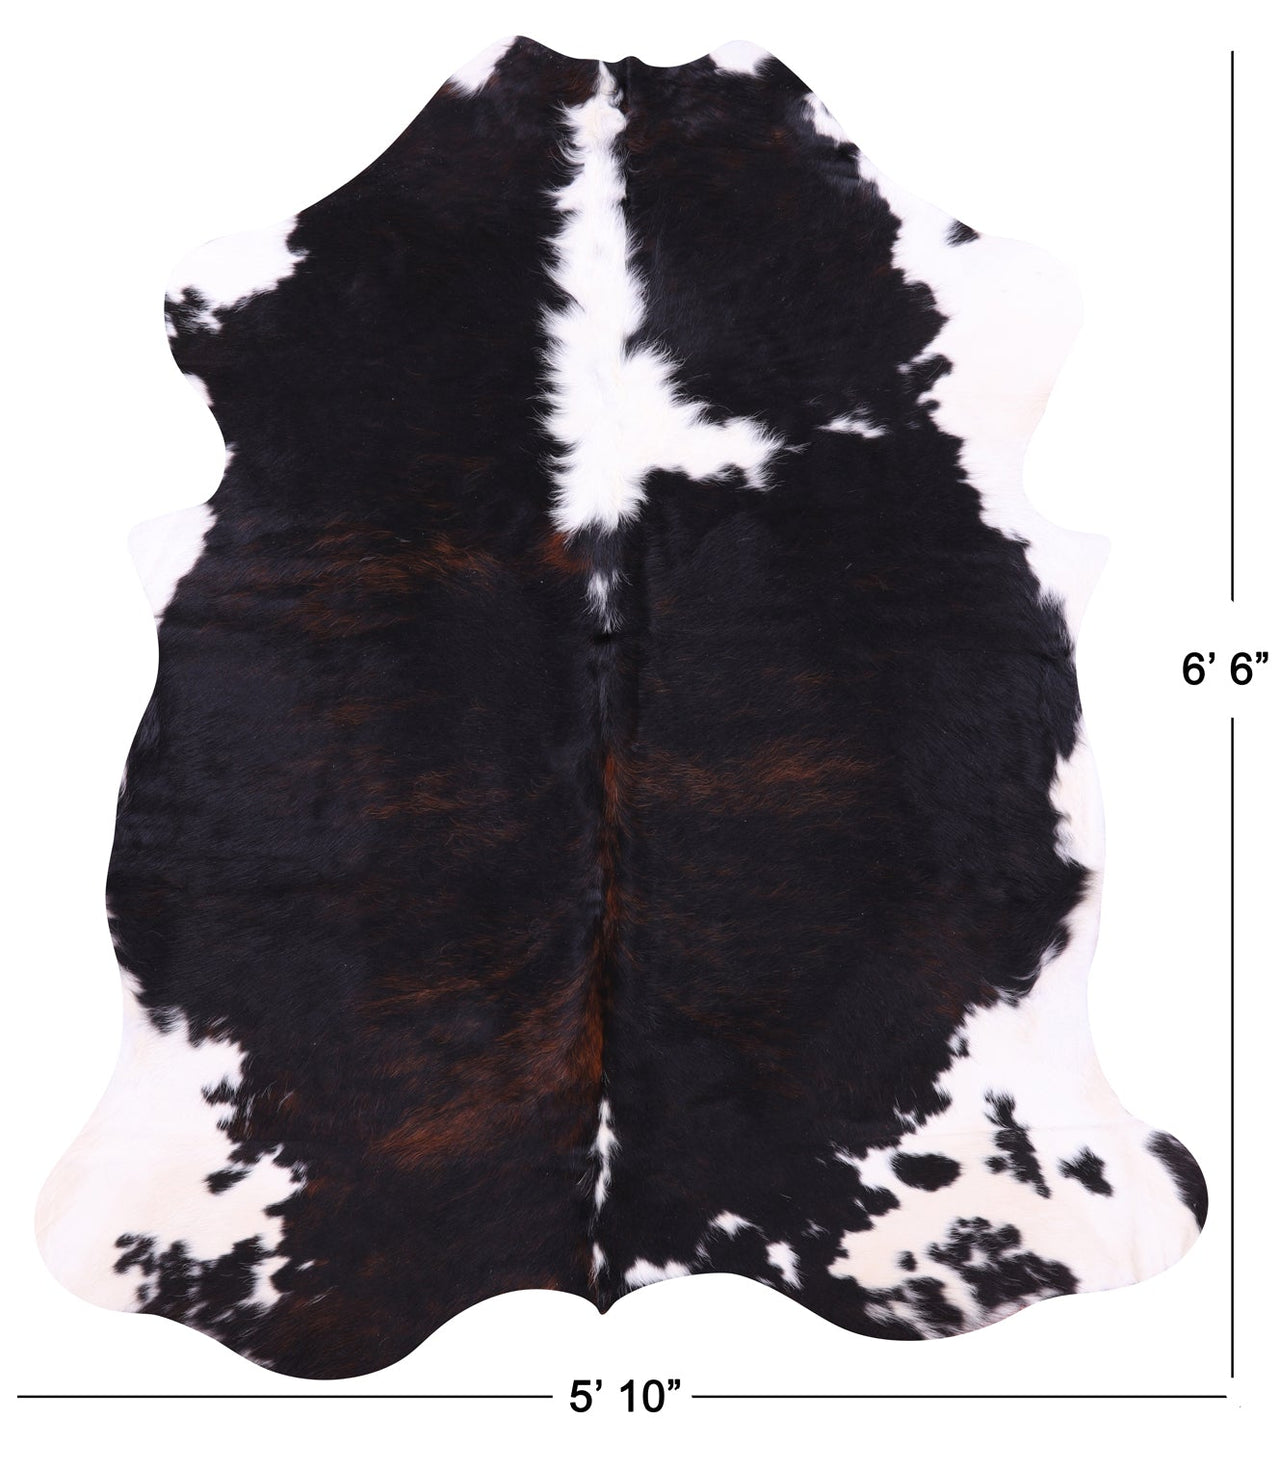 Black & White Natural Cowhide Rug - Medium 6'6"H x 5'10"W